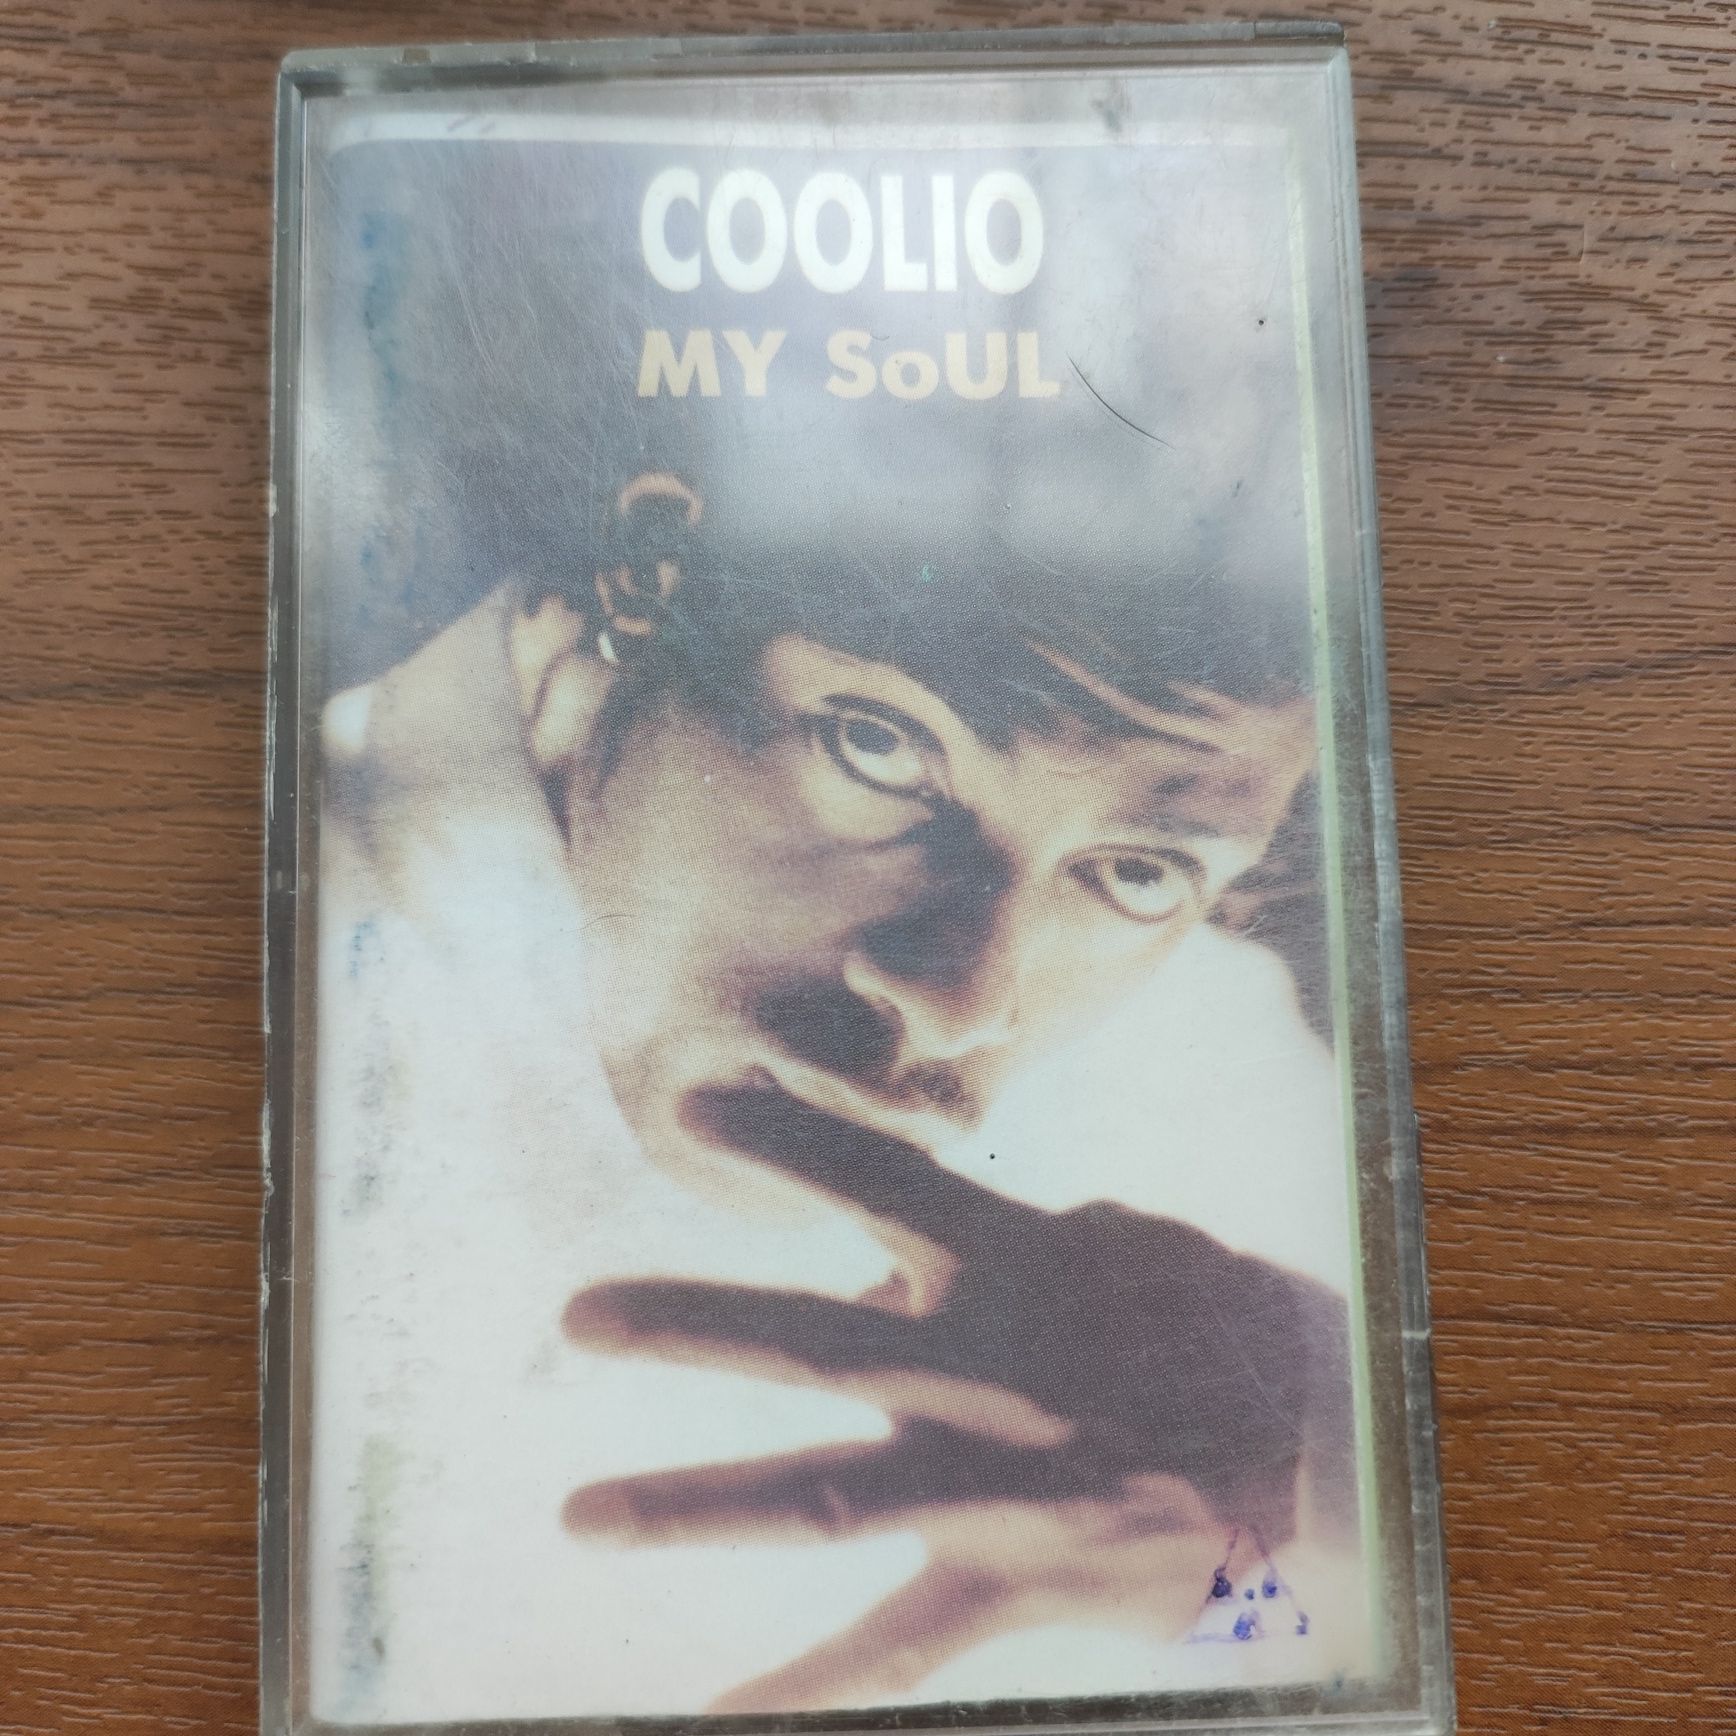 Coolio аудиокассета.